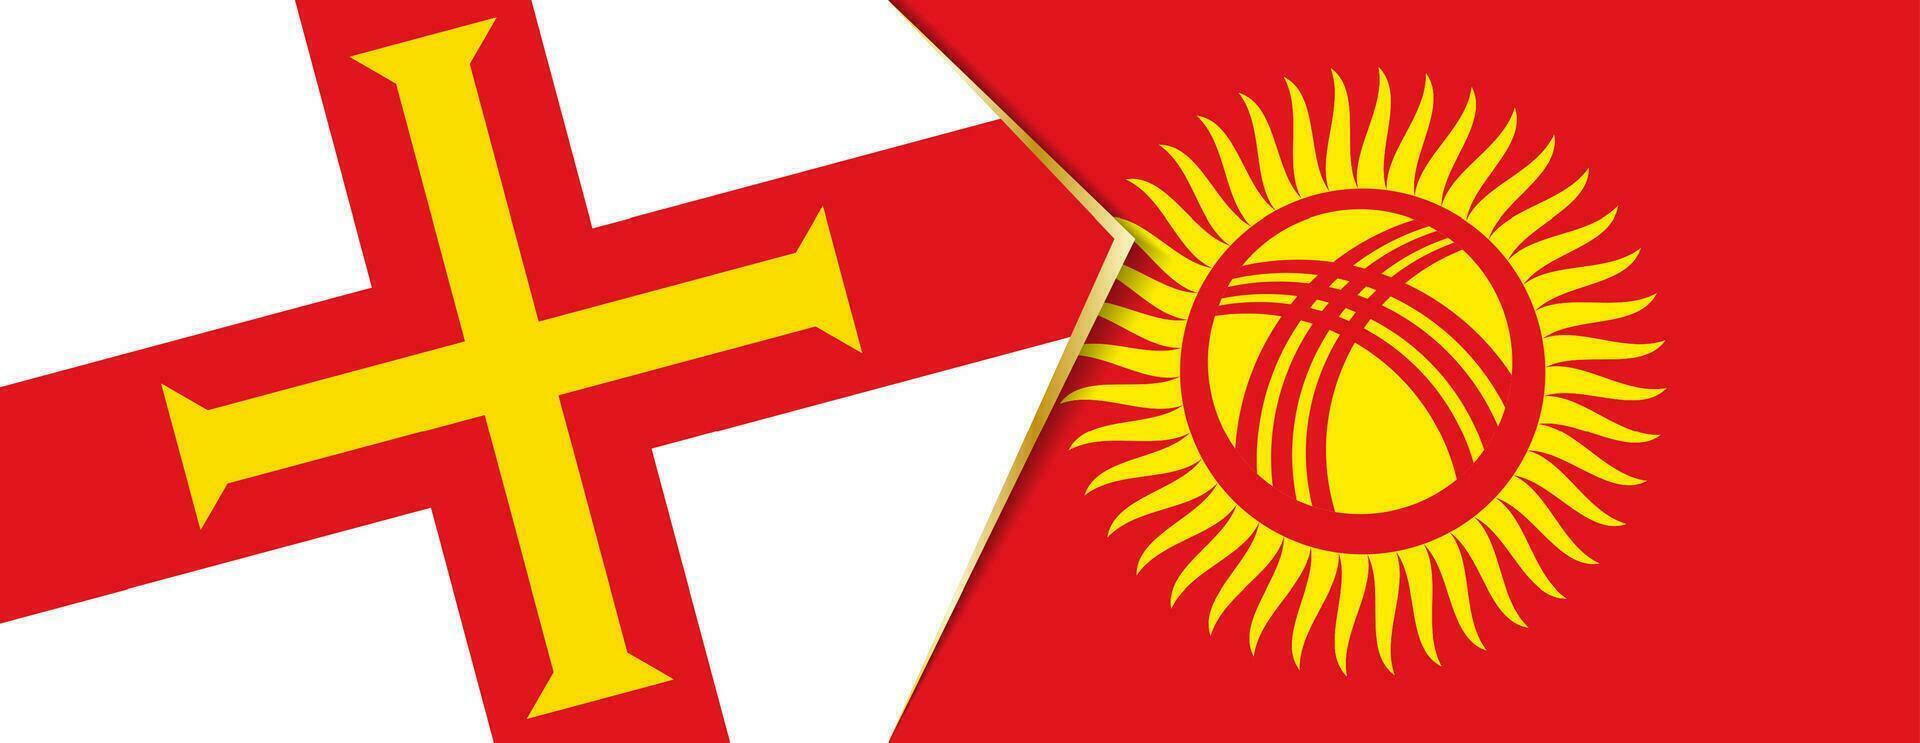 guernsey och kyrgyzstan flaggor, två vektor flaggor.